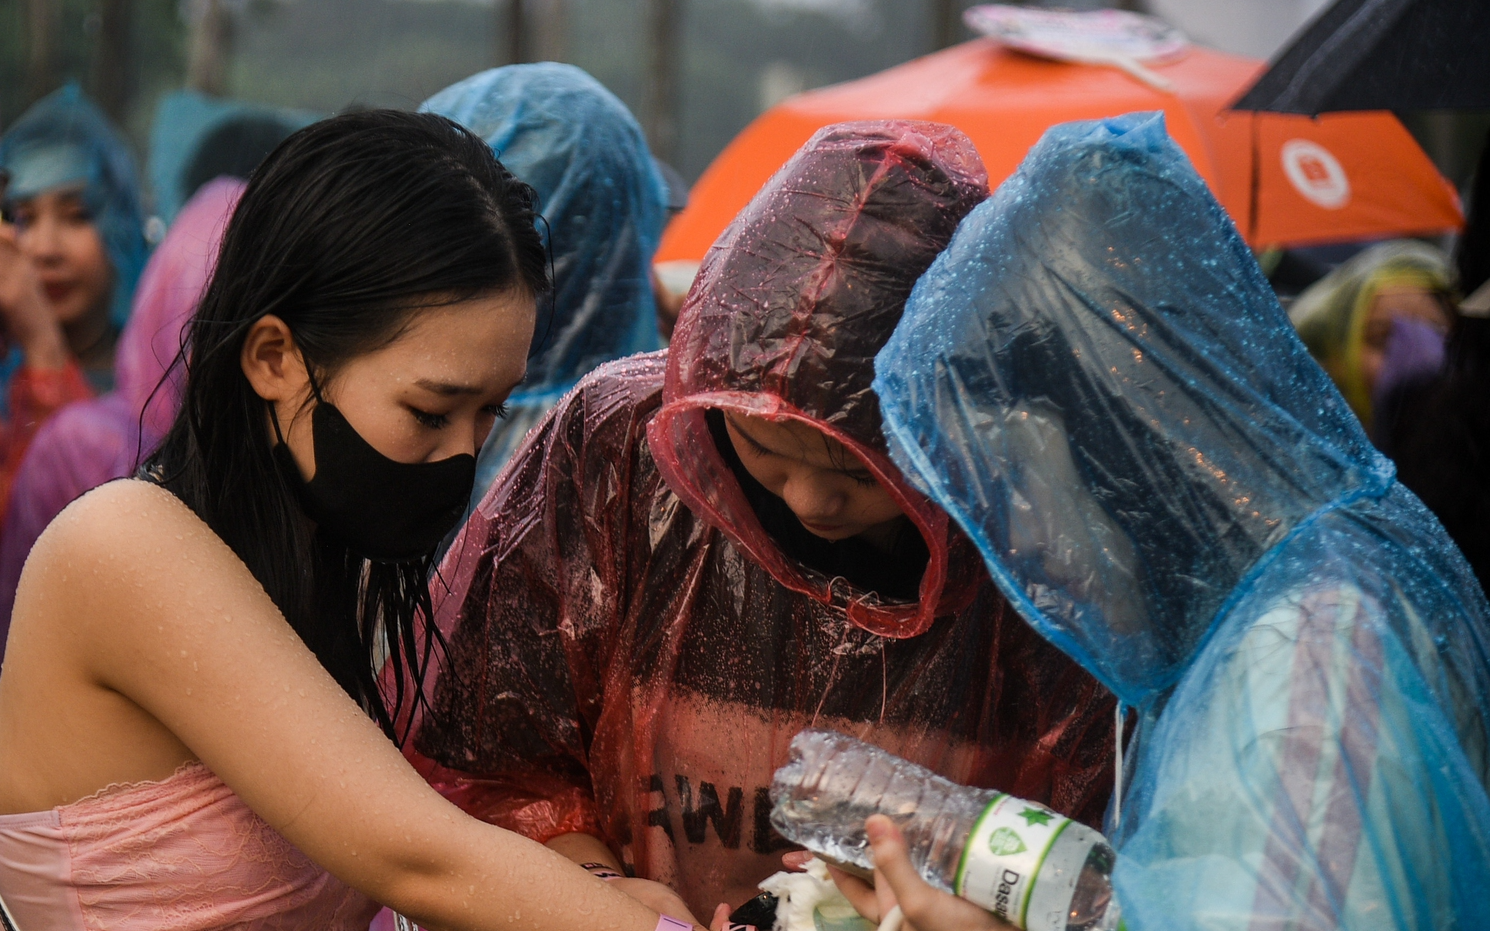 Hàng nghìn người "đội mưa" lớn ở Mỹ Đình để chờ được "cháy" cùng 4 cô gái Blackpink